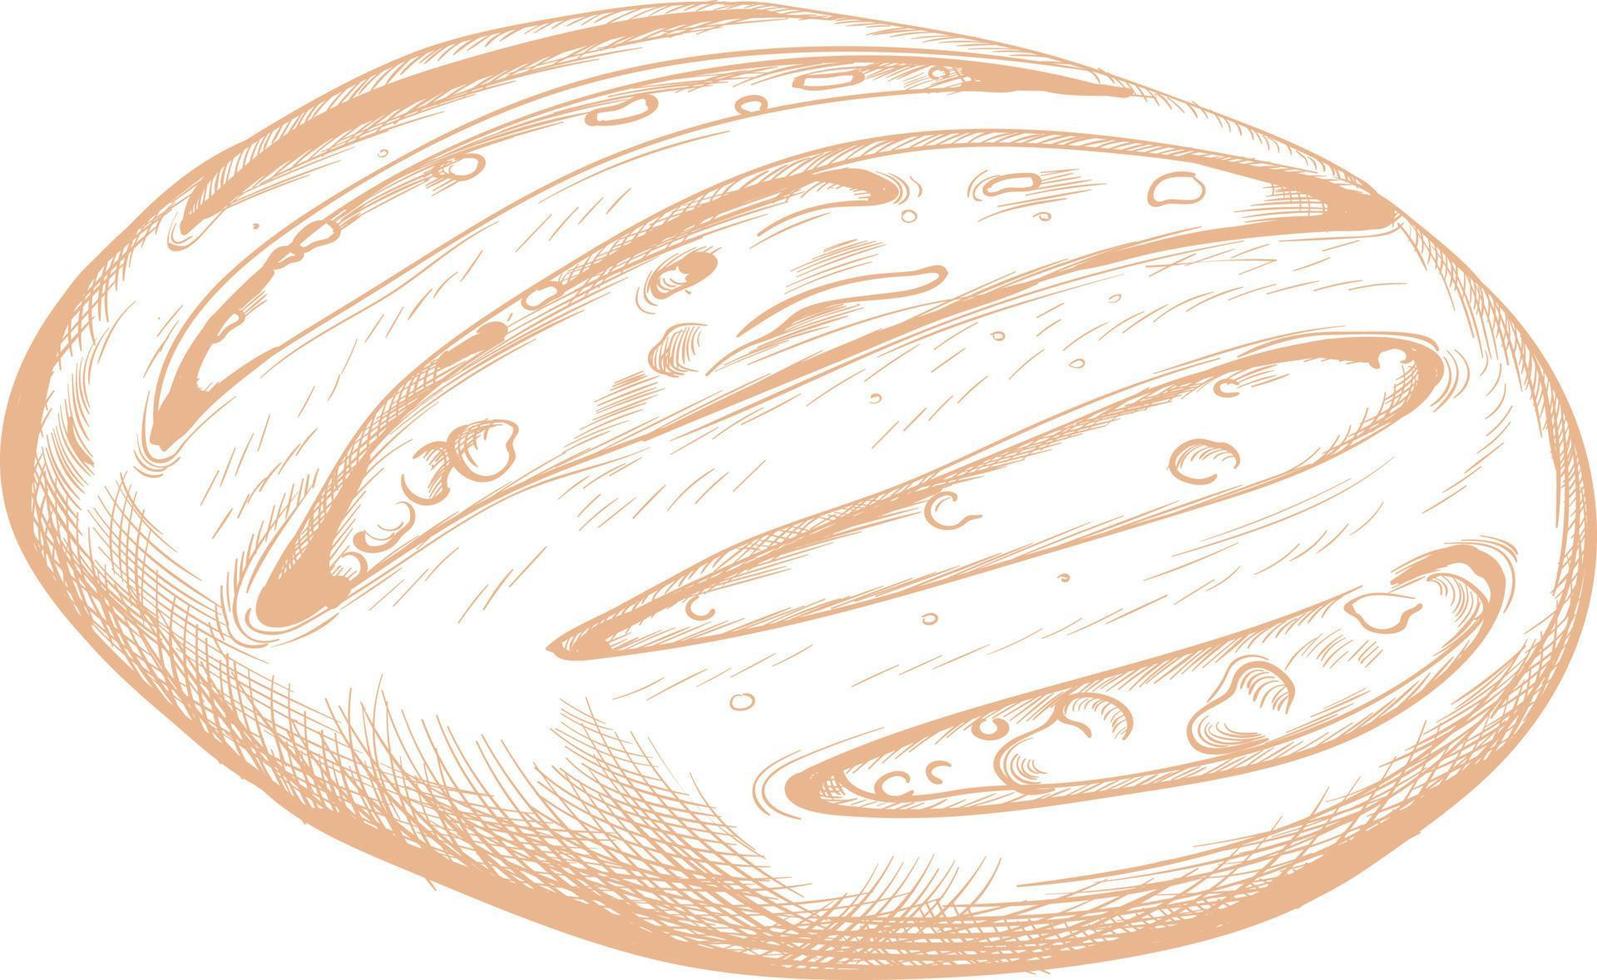 Bread for food drawn sketch. vector